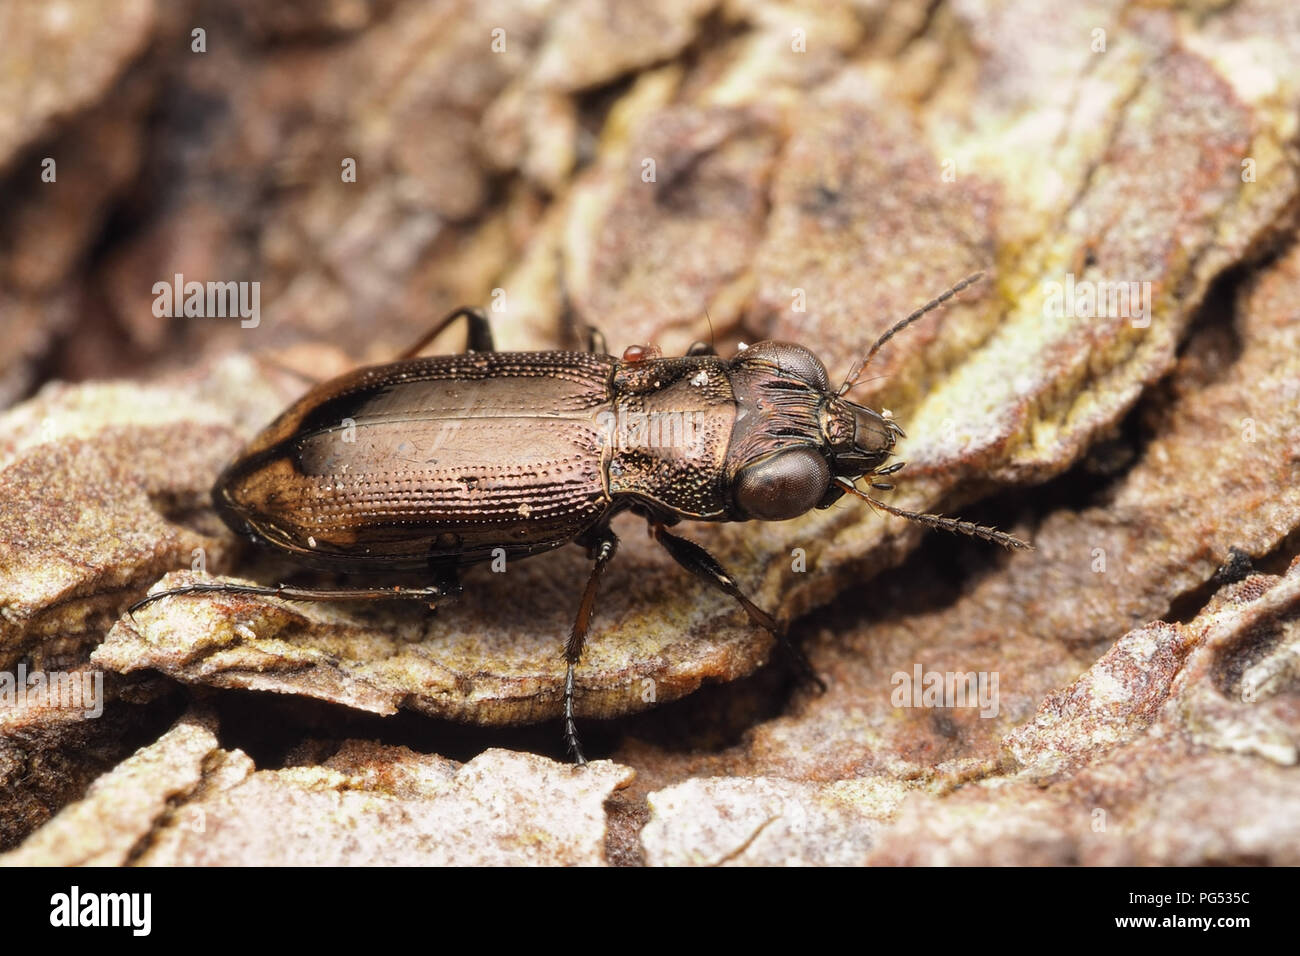 Escarabajo de tierra (Notiophilus biguttatus) caminando por el suelo. Tipperary, Irlanda Foto de stock